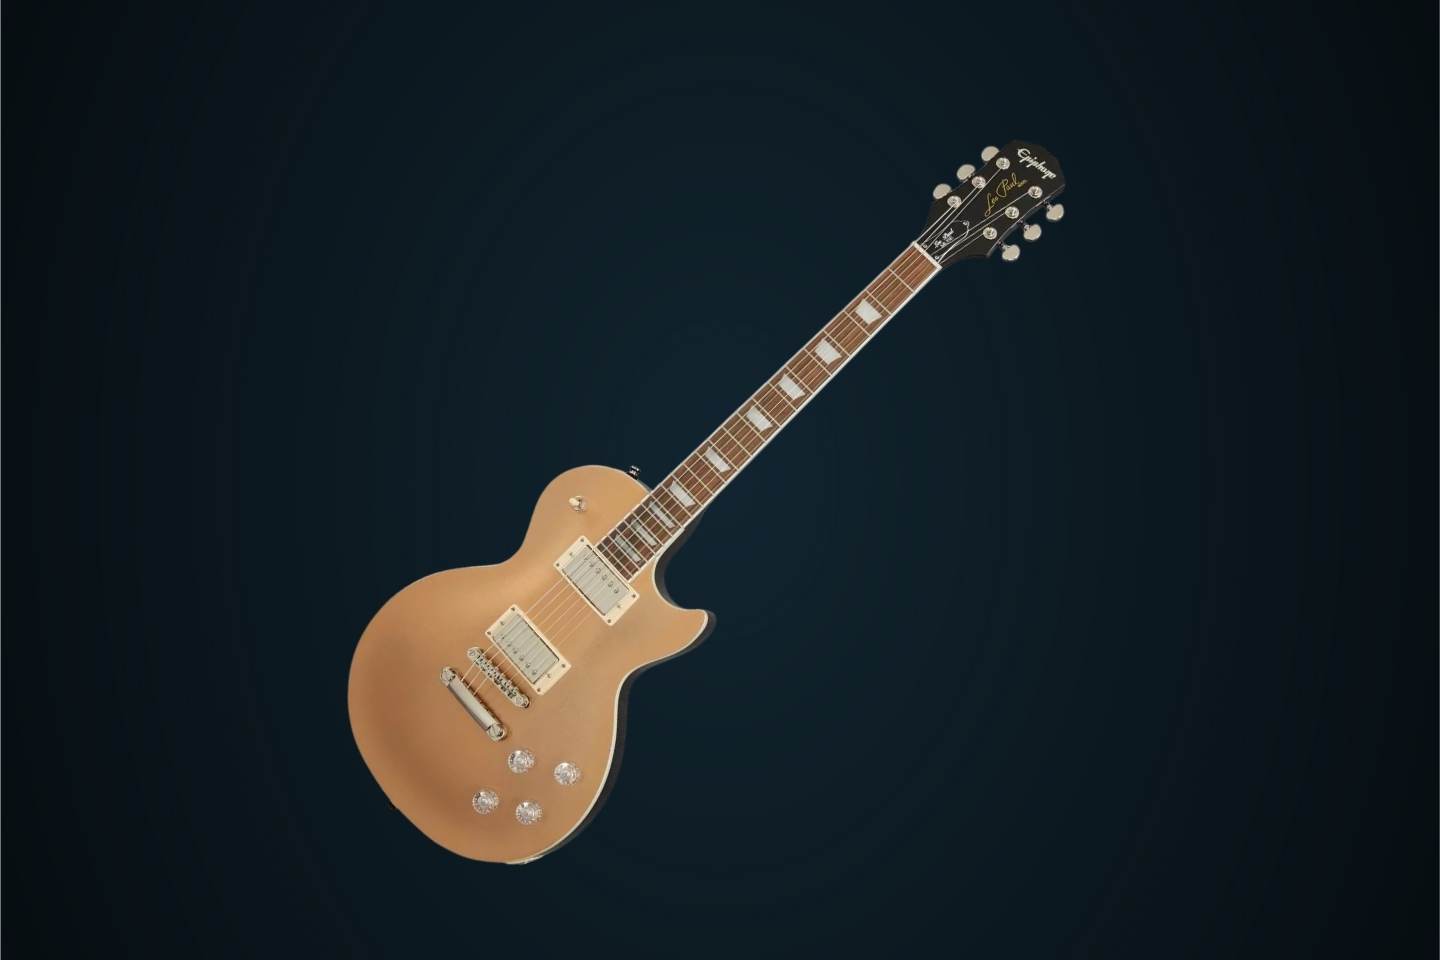 Guitarra elétrica Epiphone Modern Les Paul Muse de mogno smoked almond metallic metálico com diapasão de louro indiano